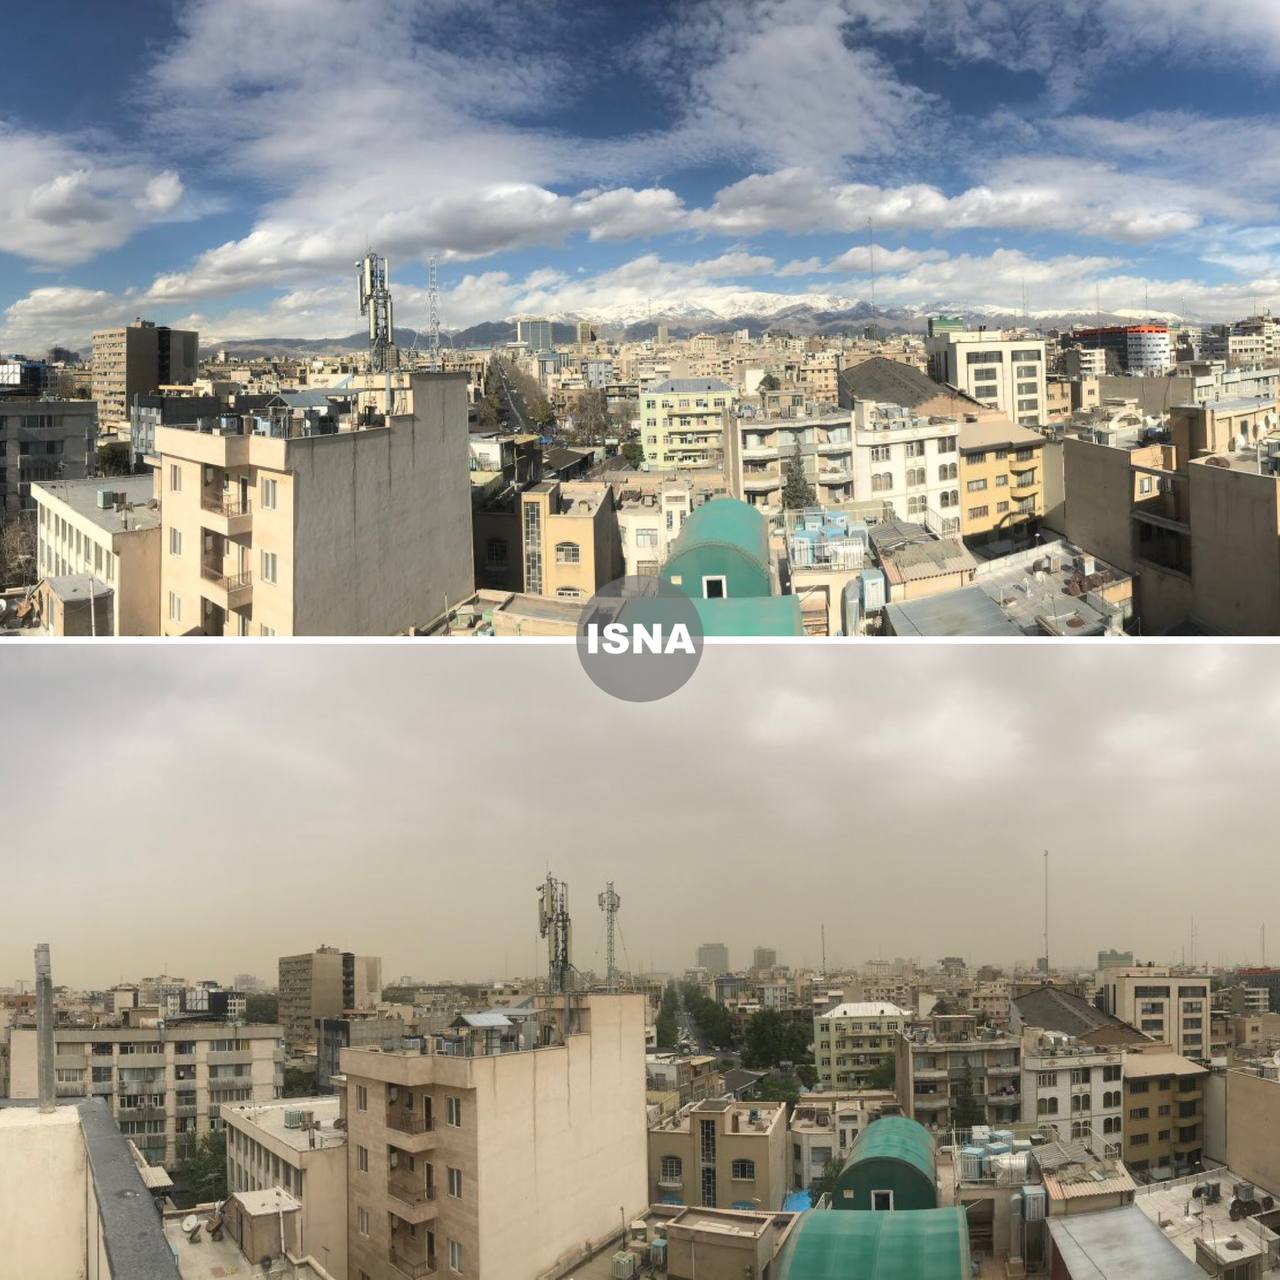  تفاوت عجیب آسمان تهران در روز پاک و آلوده